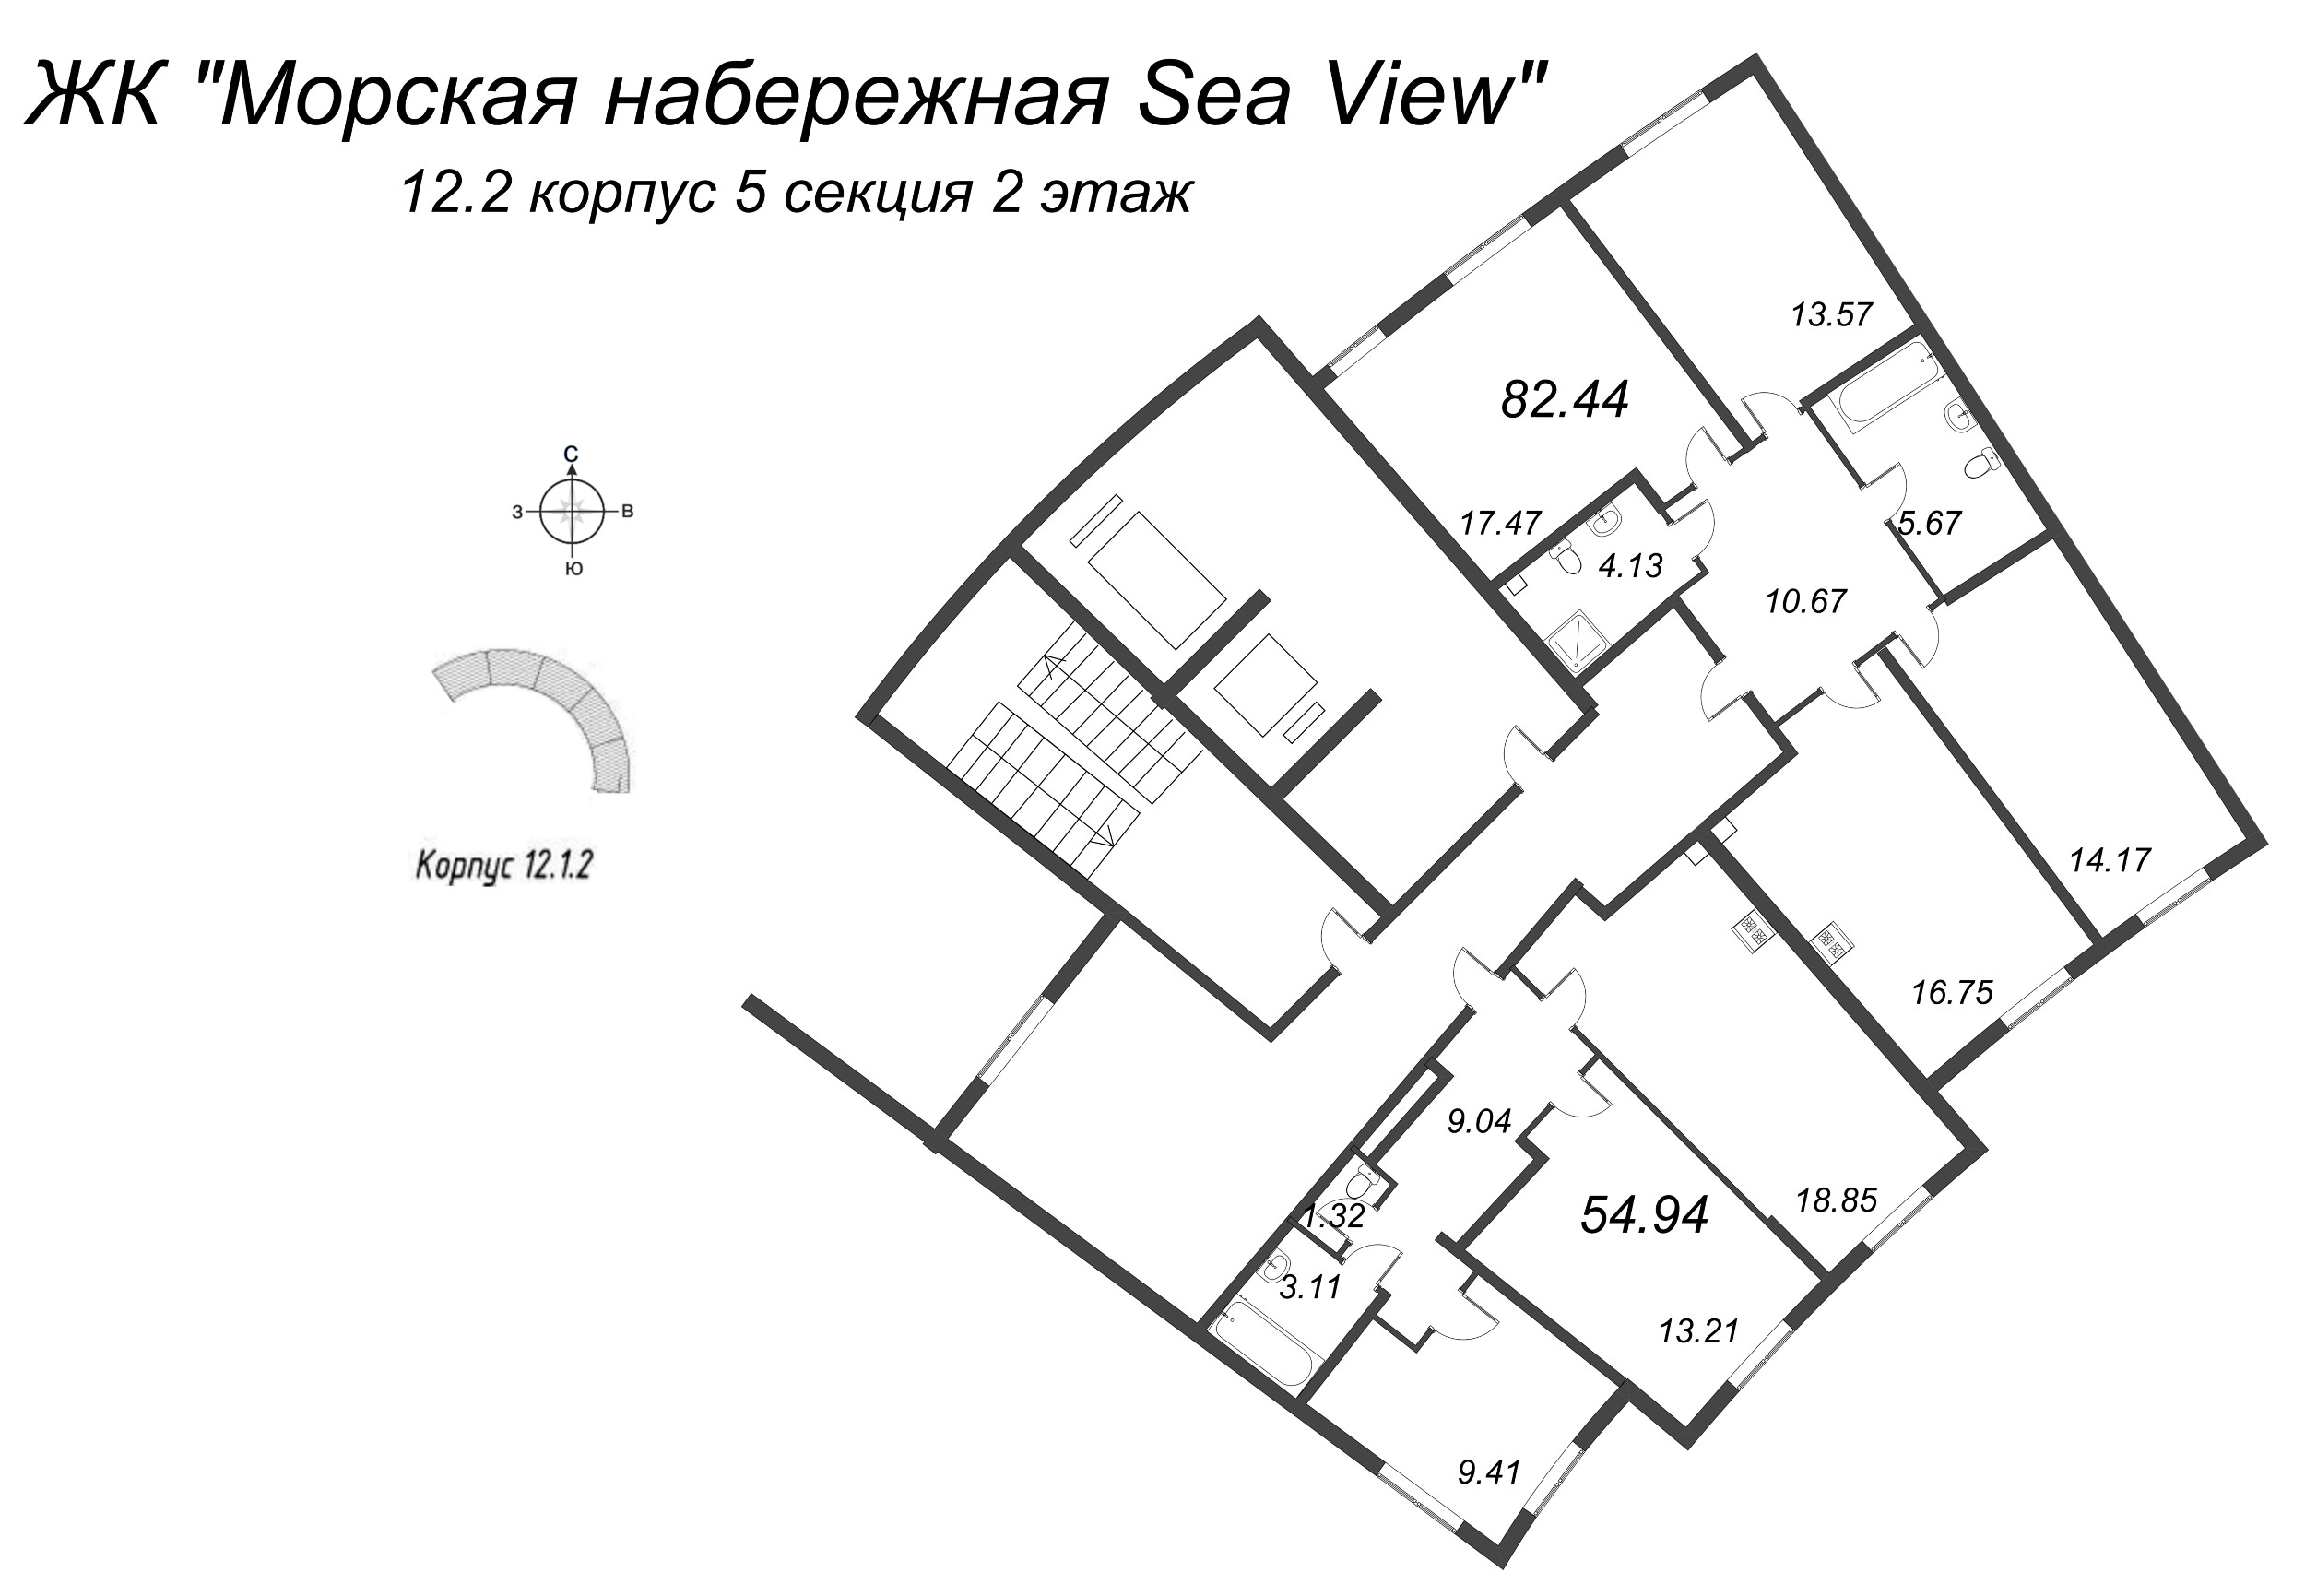 4-комнатная (Евро) квартира, 82.44 м² в ЖК "Морская набережная. SeaView" - планировка этажа